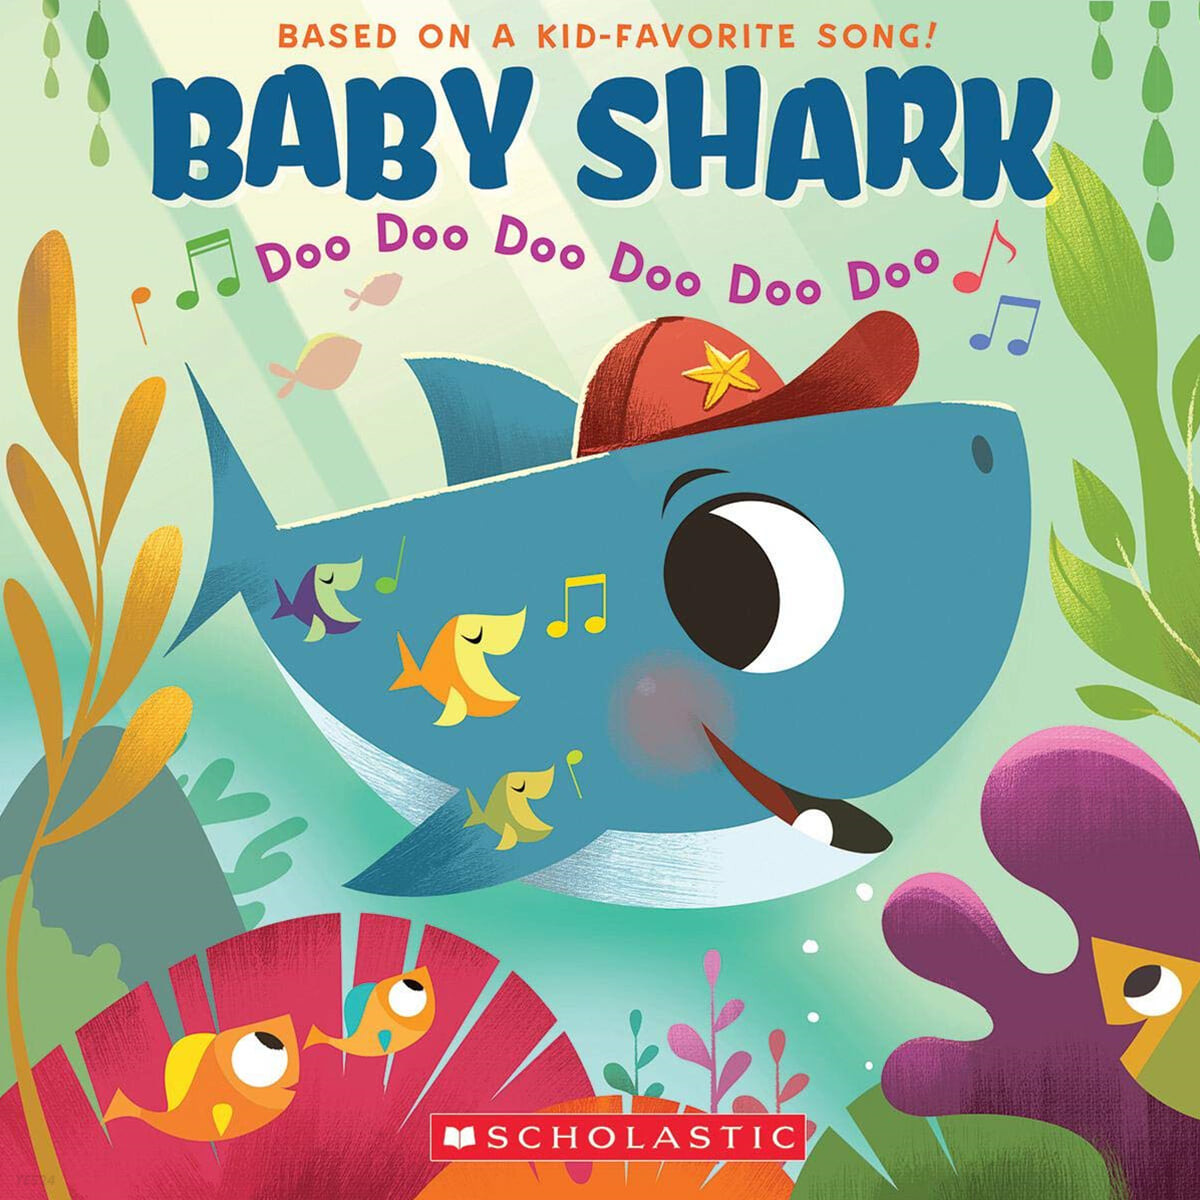 Baby Shark (Doo Doo Doo Doo Doo Doo)